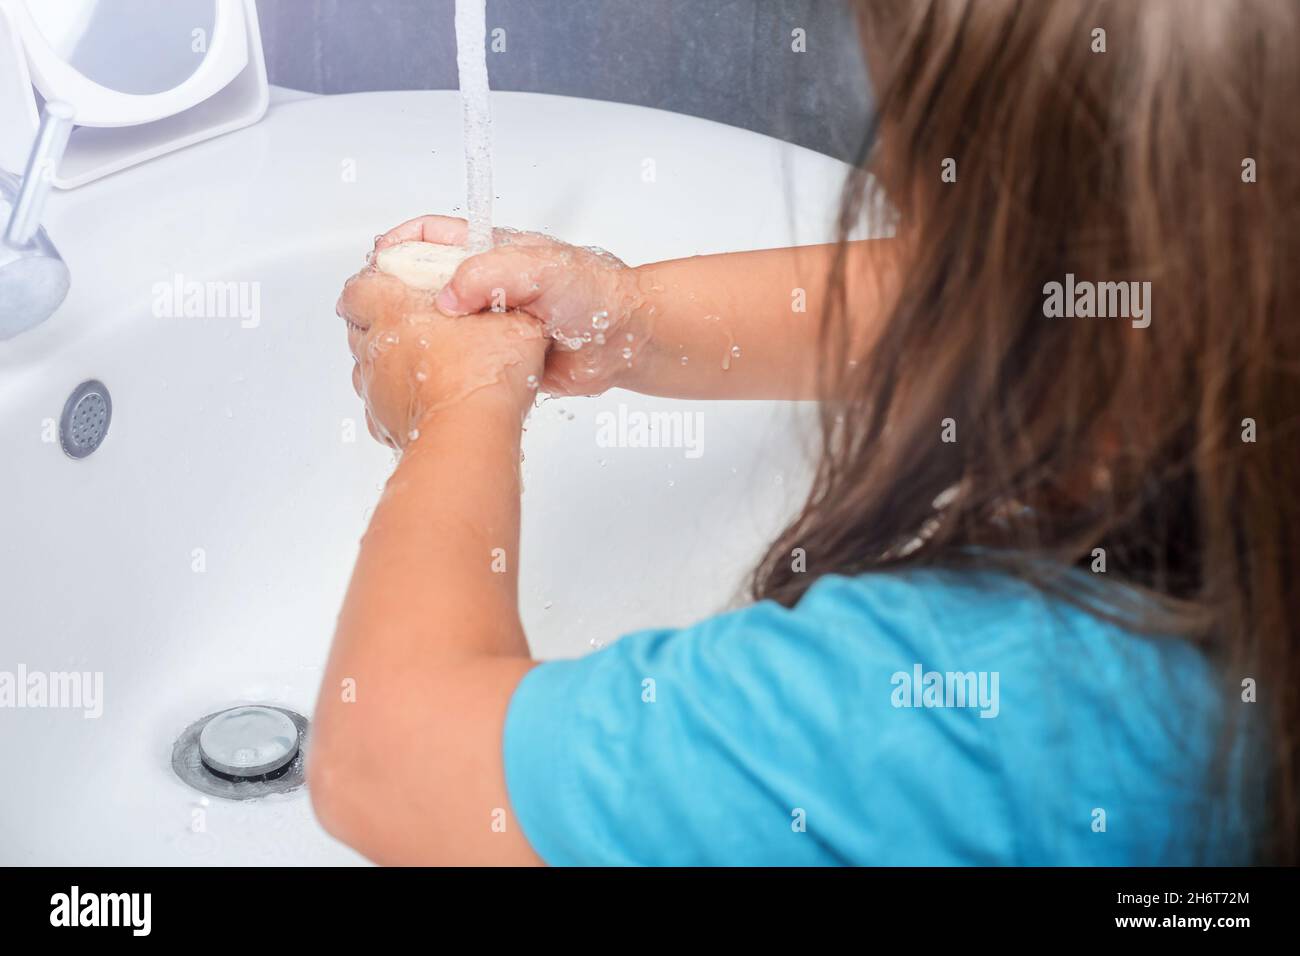 Das Kind wäscht ihre Hände mit Seife unter fließendem Wasser im Badezimmer Stockfoto